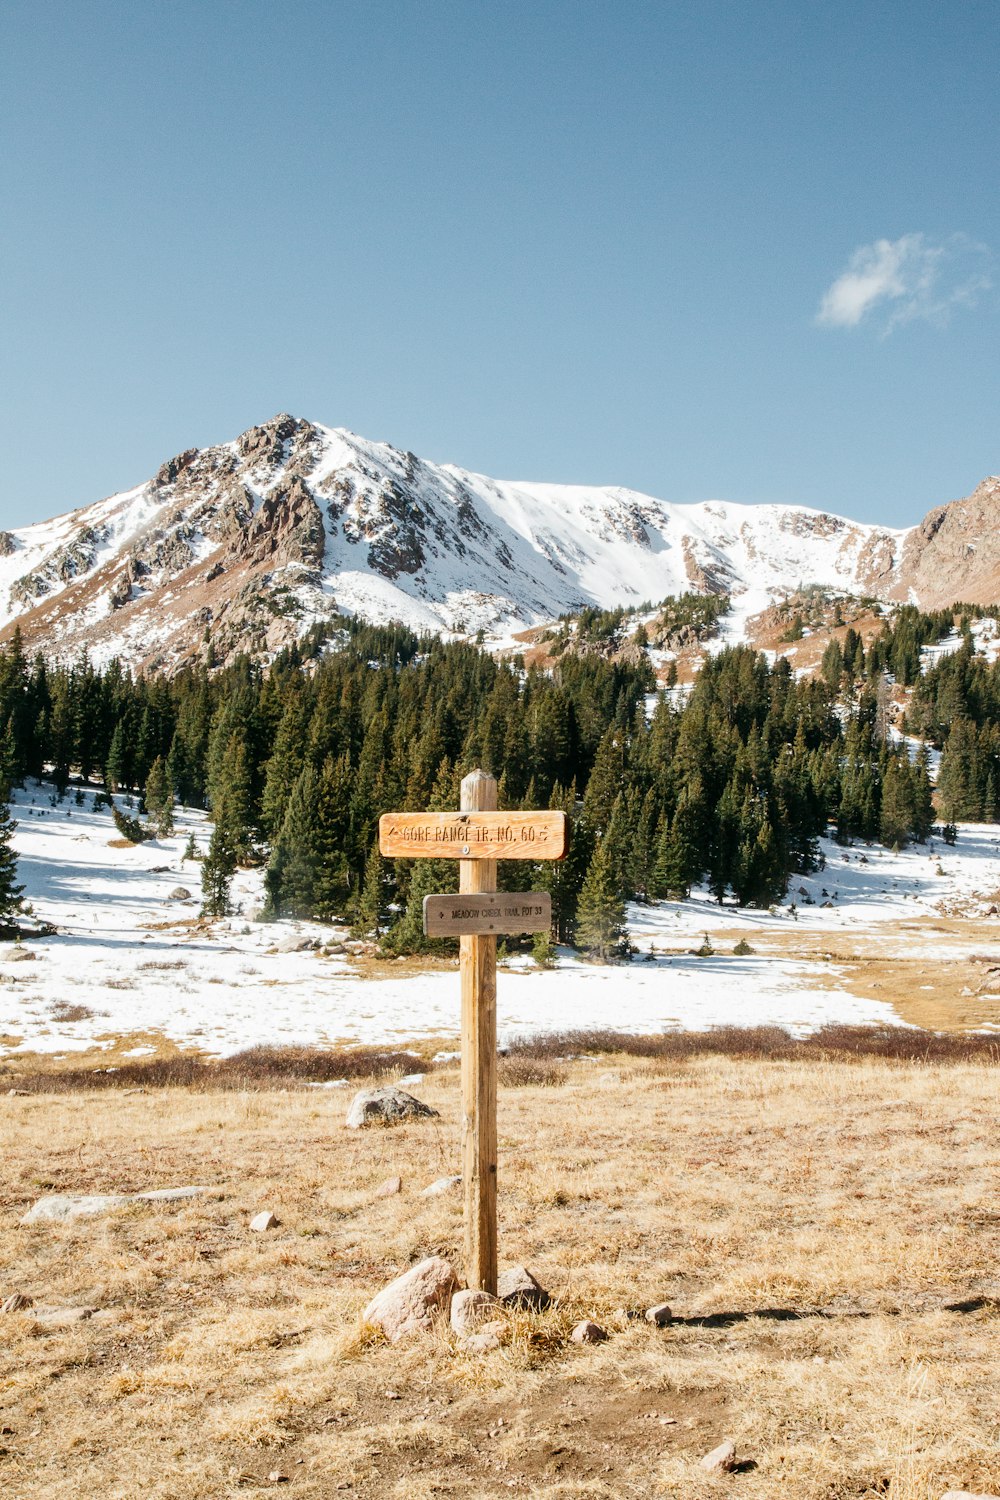 Pie de señalización de madera en el suelo y vista de la montaña nevada